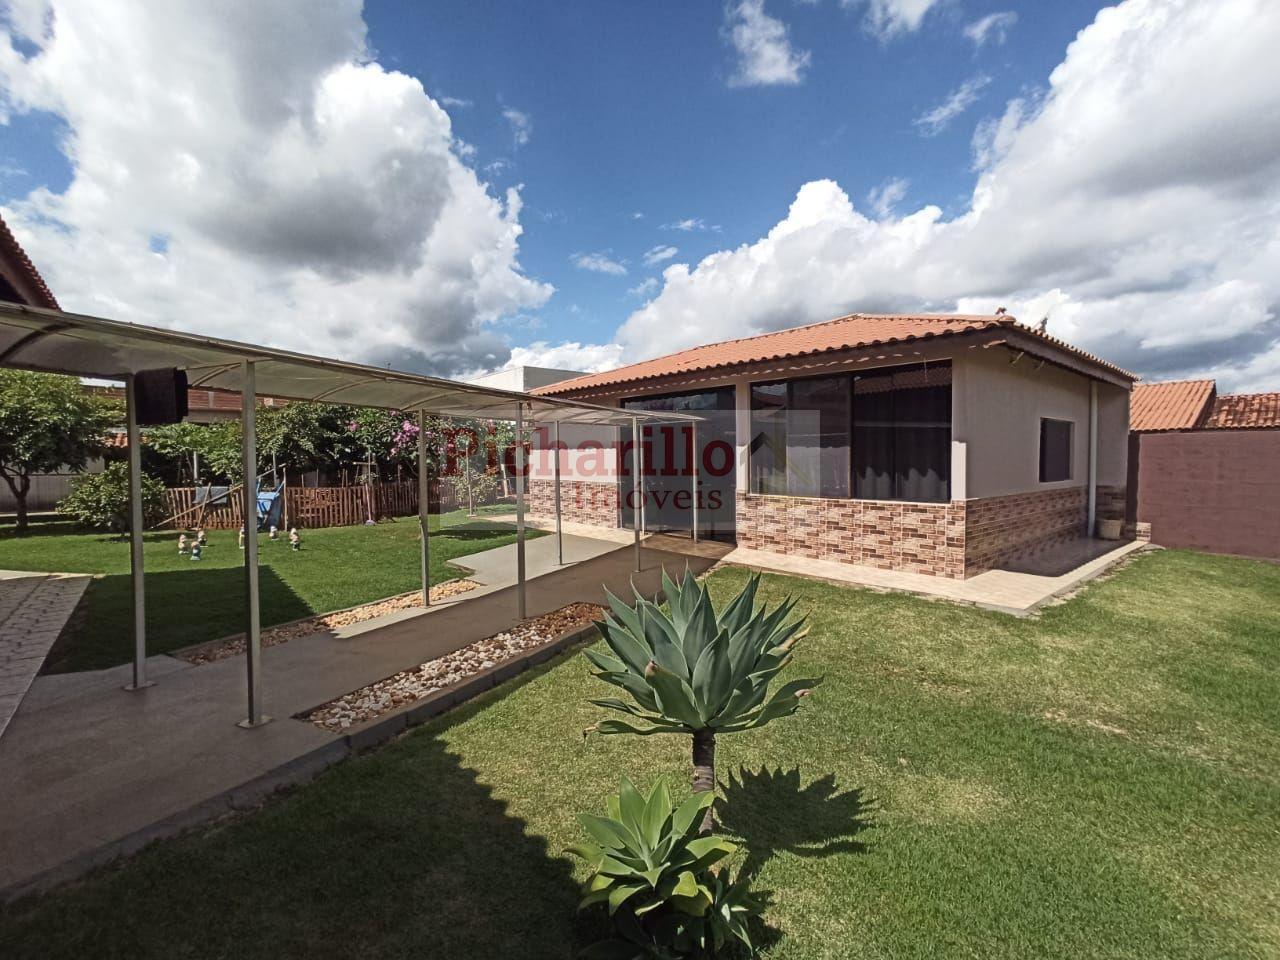 Casa com 2 dormitórios à venda, 210 m² de área construída no condomínio Quinta dos Buritis - São Carlos/SP